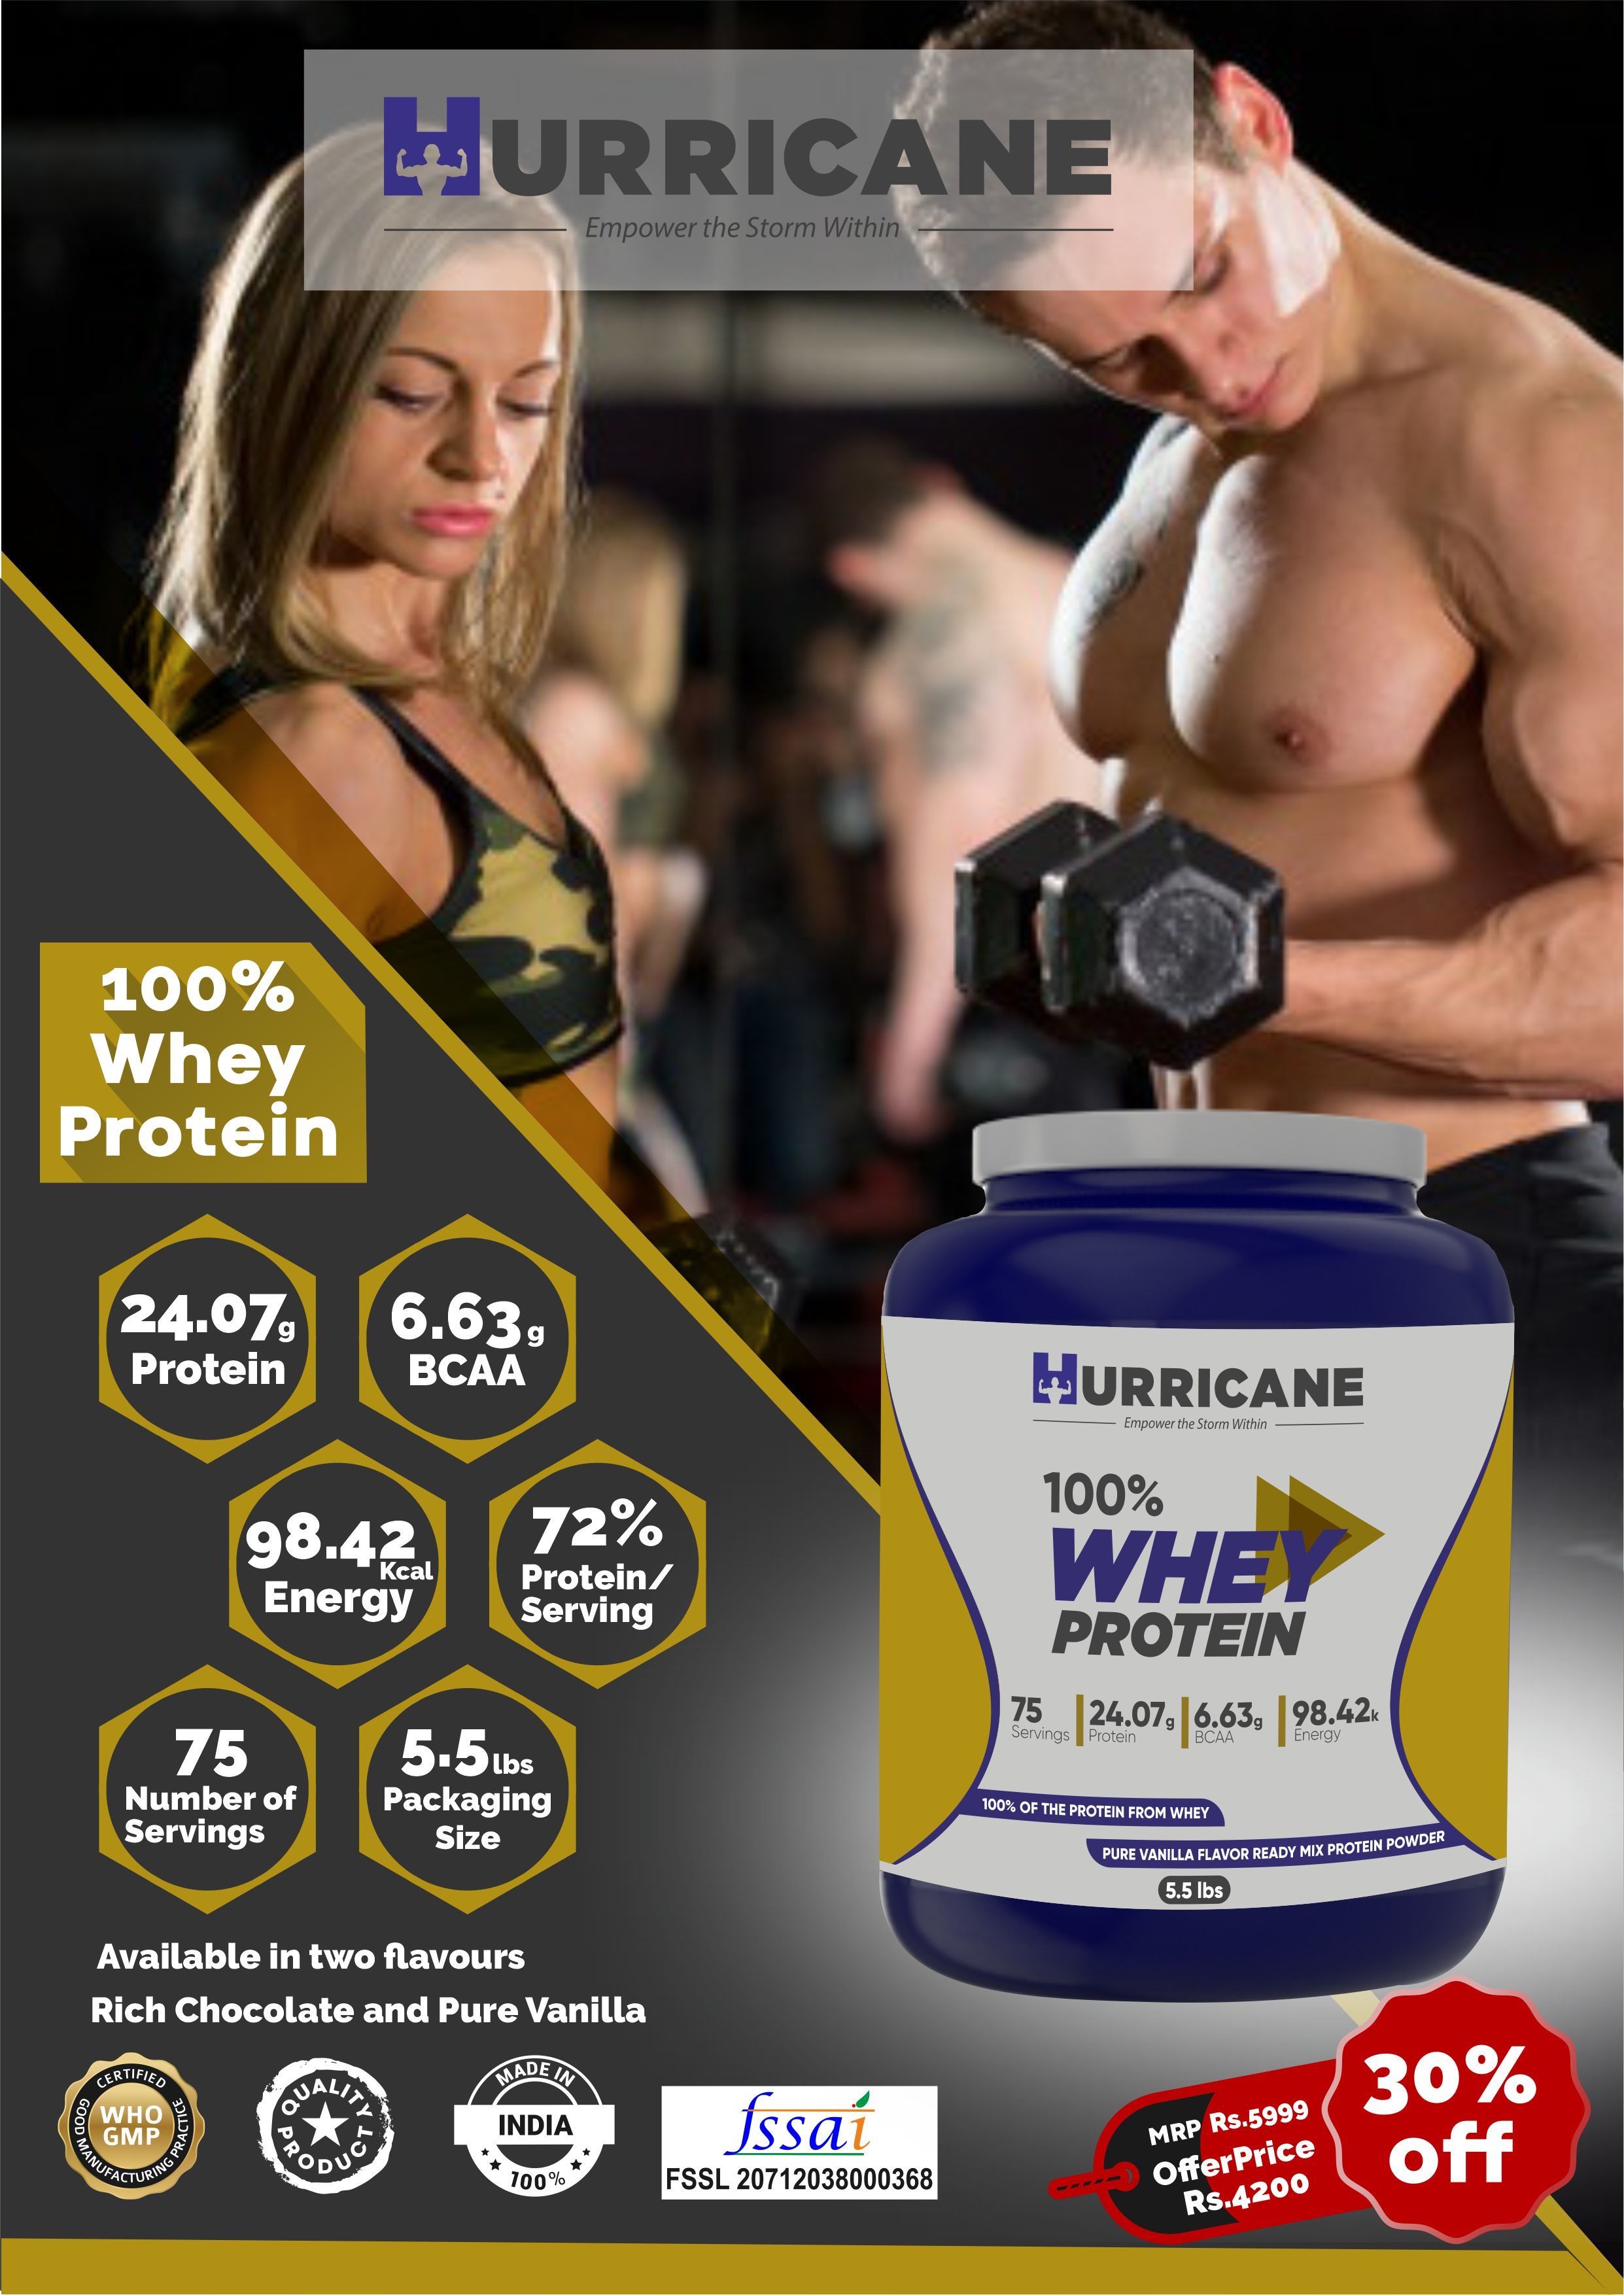 Hurricane 100% Whey Protein - Vanilla Flavour